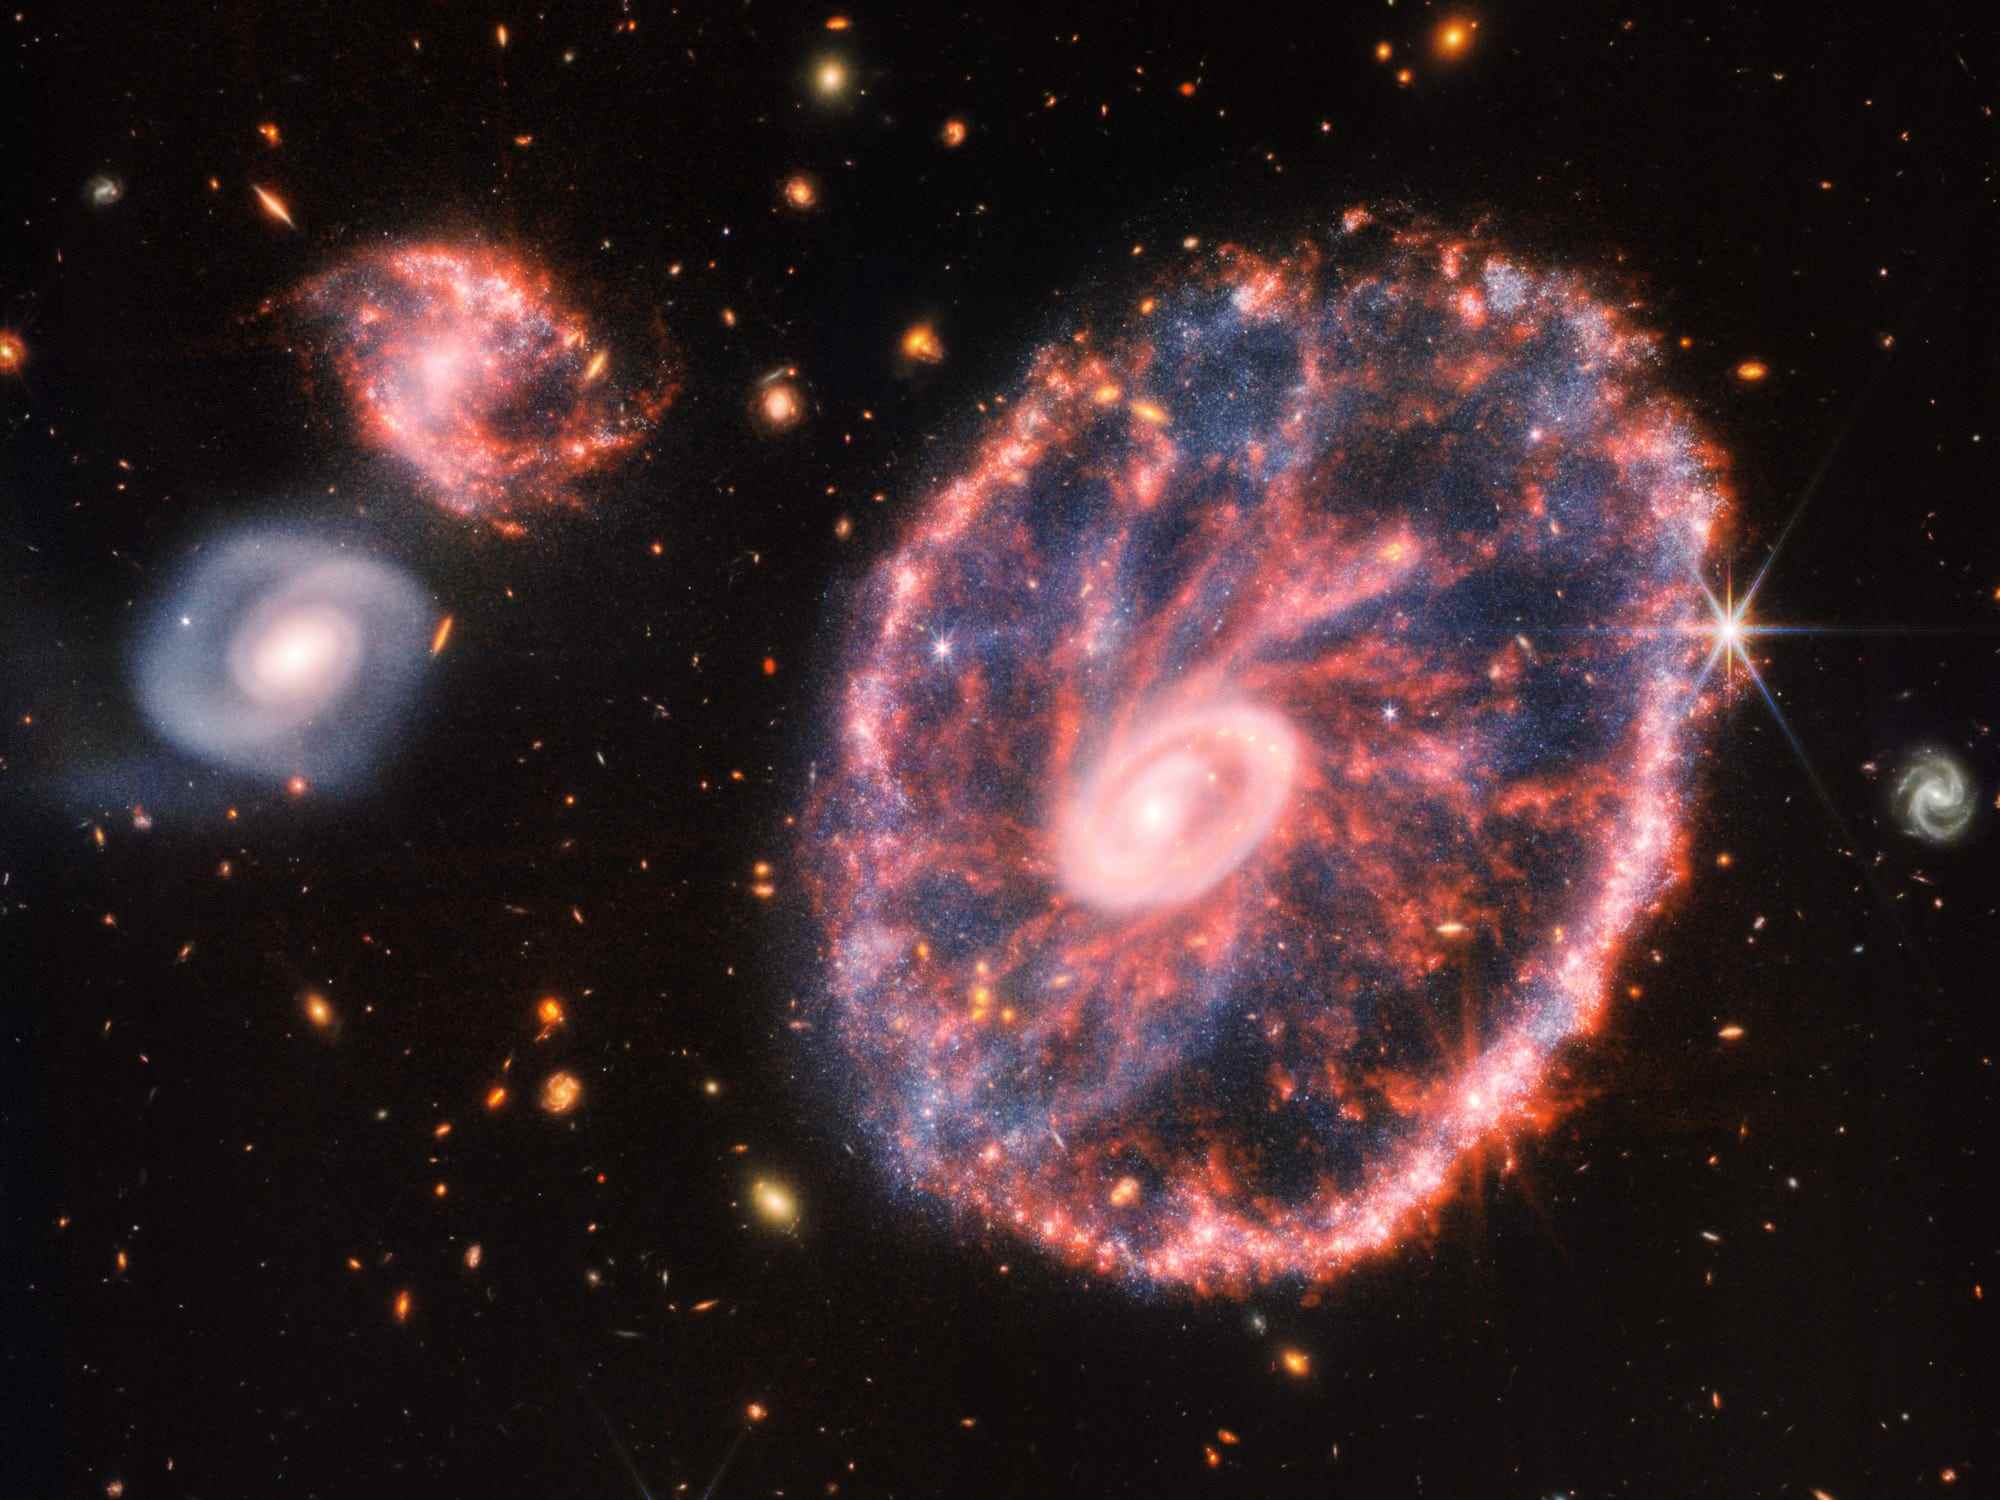 Das James Webb Space Telescope hat eine Momentaufnahme der Cartwheel Galaxy aufgenommen, die etwa 500 Millionen Lichtjahre von der Erde entfernt ist.